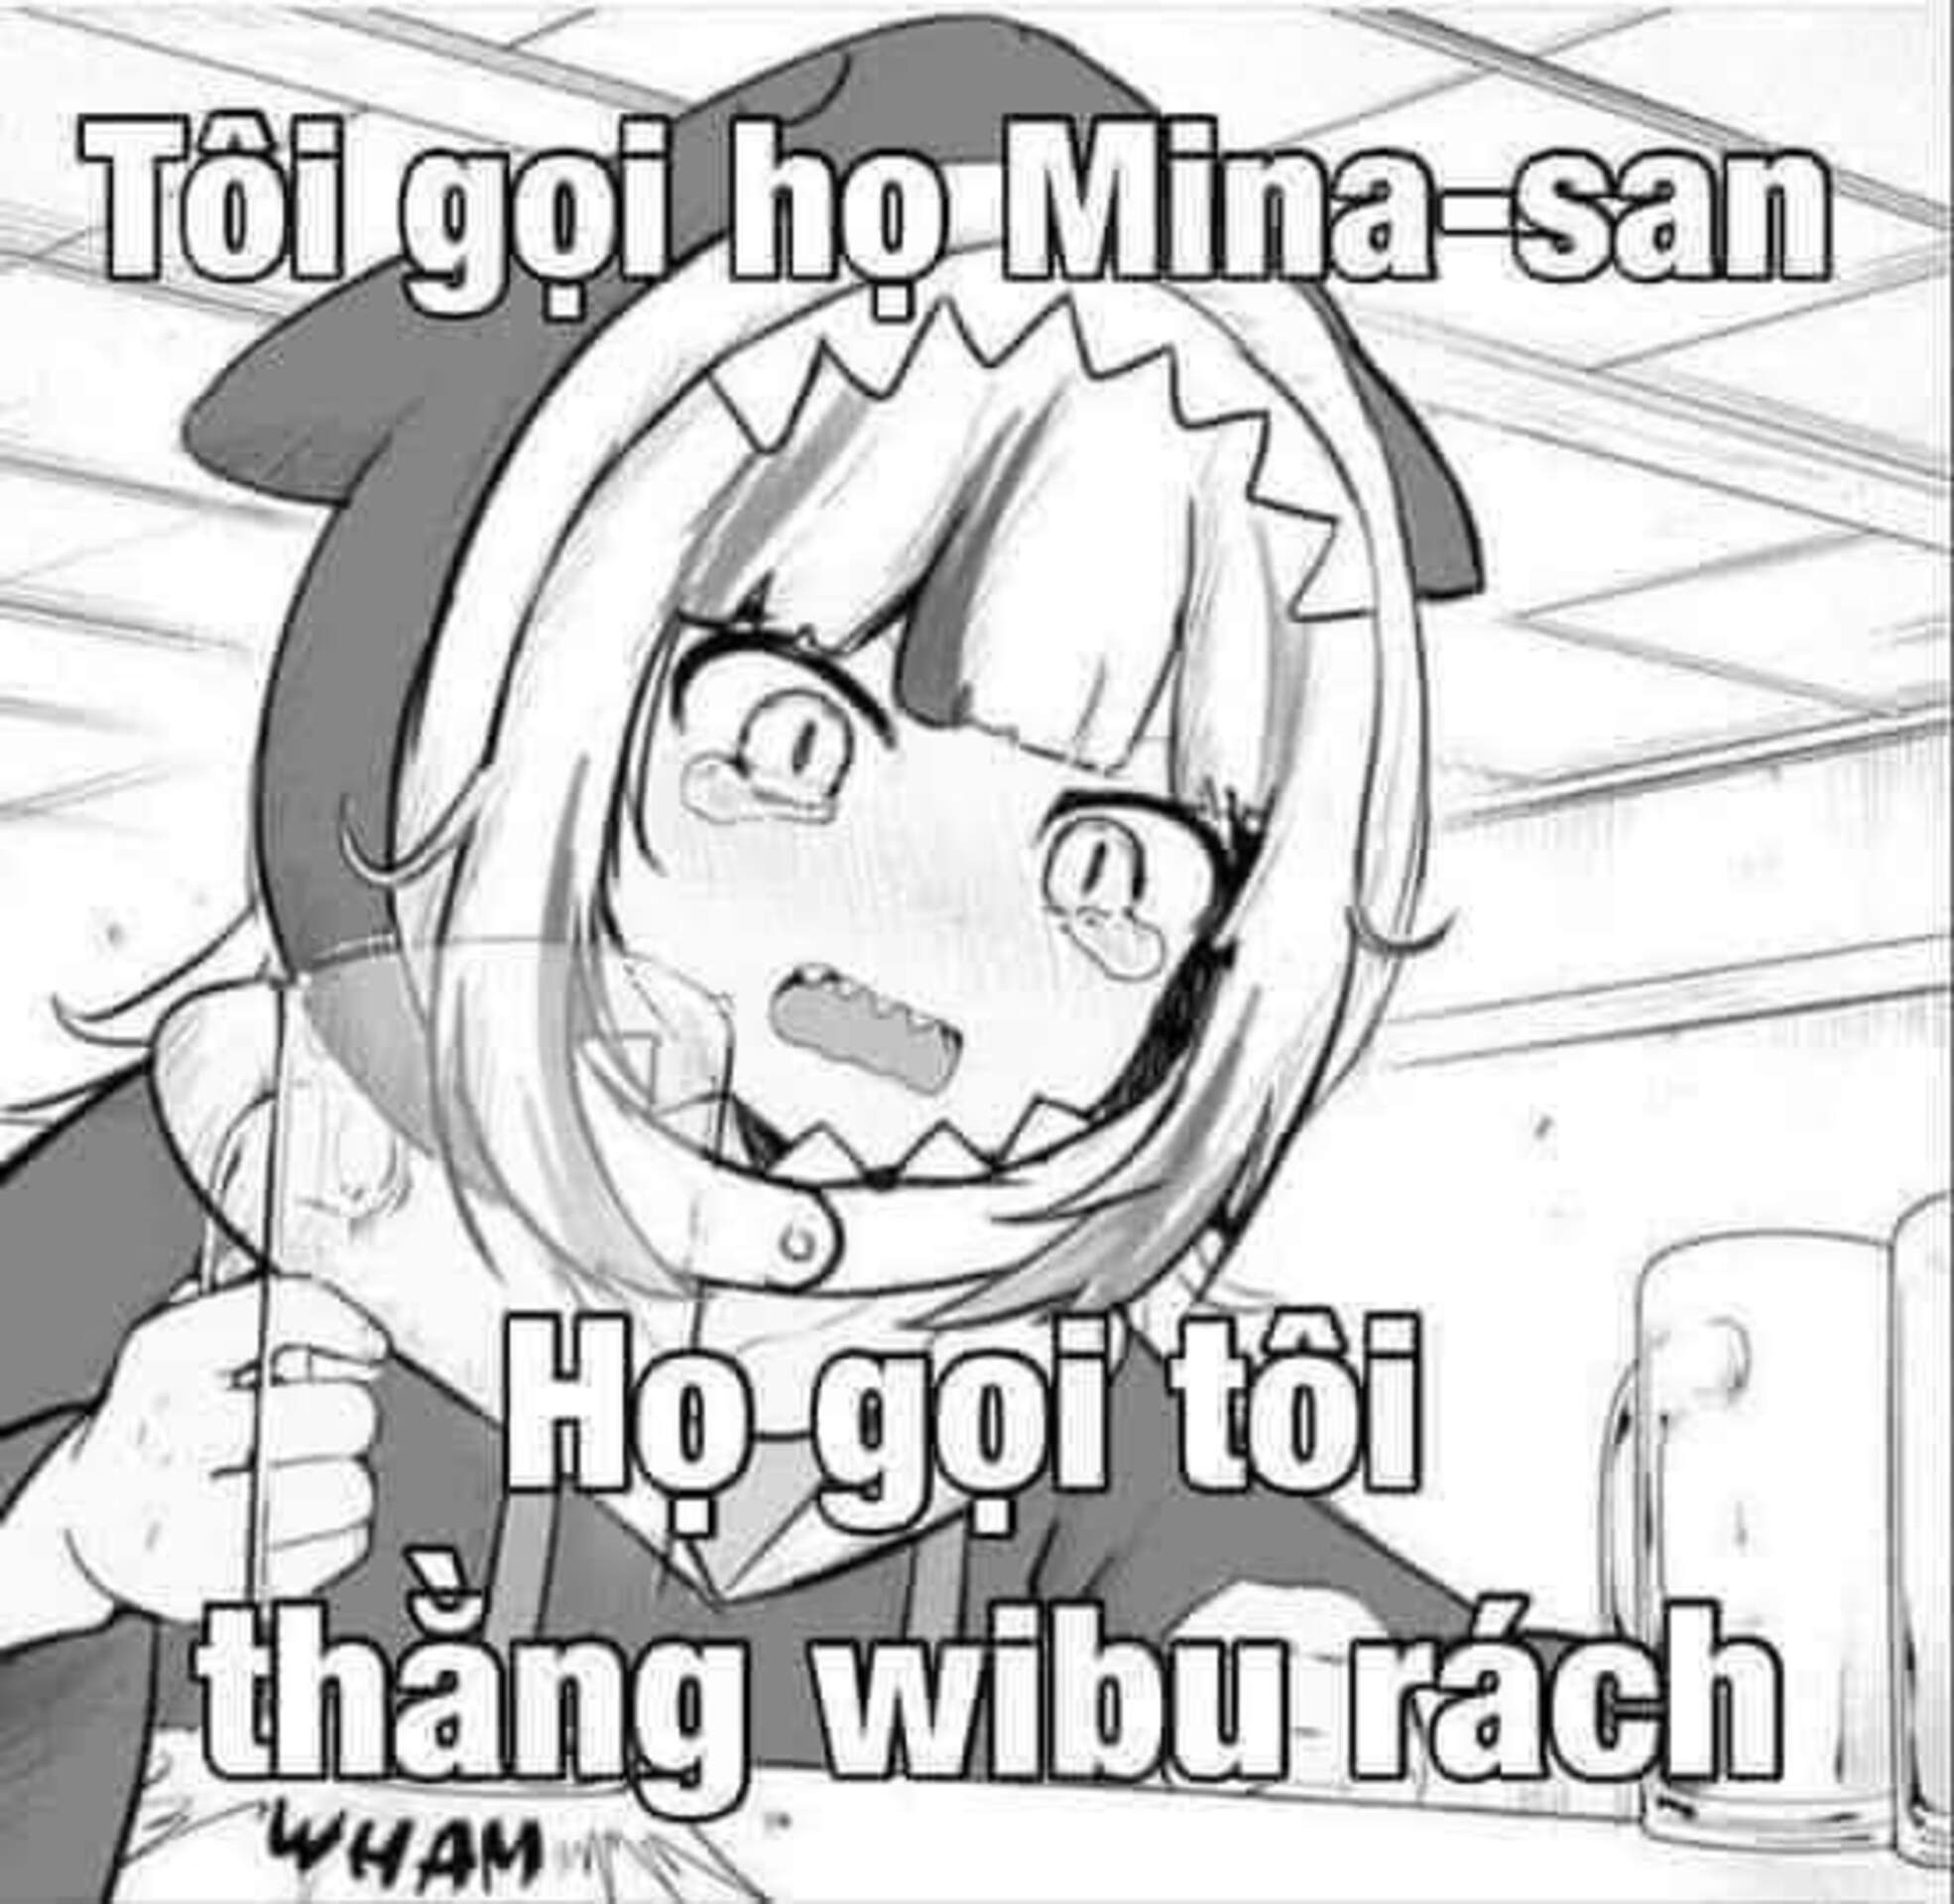 Xem Hình Ảnh Wibu Chế Hài để một lần nữa thấy rằng fan hâm mộ của anime cũng rất hài hước! Hãy chuẩn bị cho một số trận cười thả ga cùng Wibu, khi bạn đến với những bức hình chế độc đáo và vui nhộn nhất.